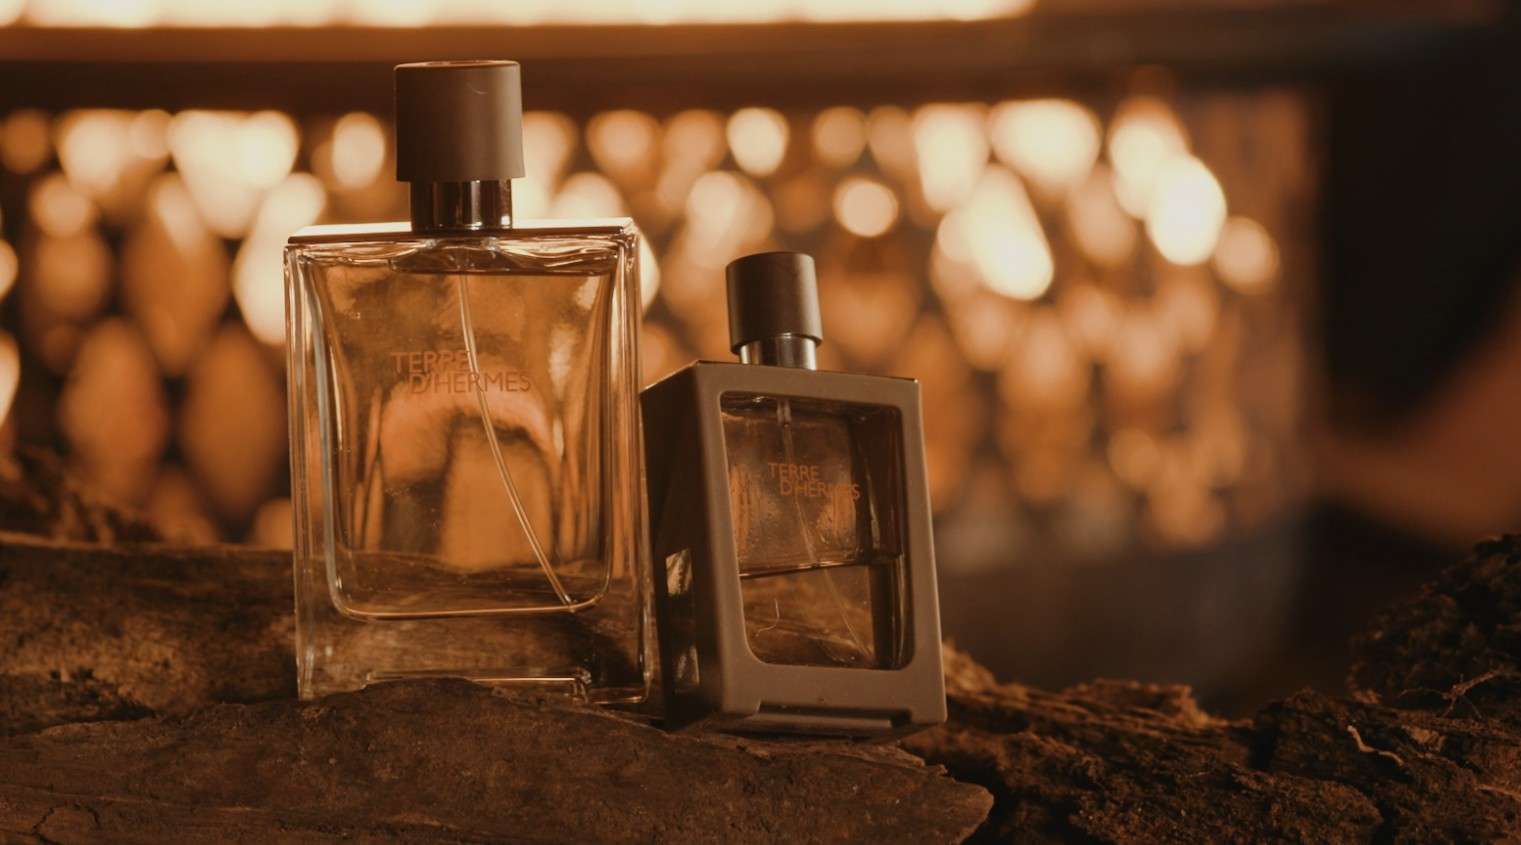 爱马仕大地香水广告 Terre Hermes fragrance commercial